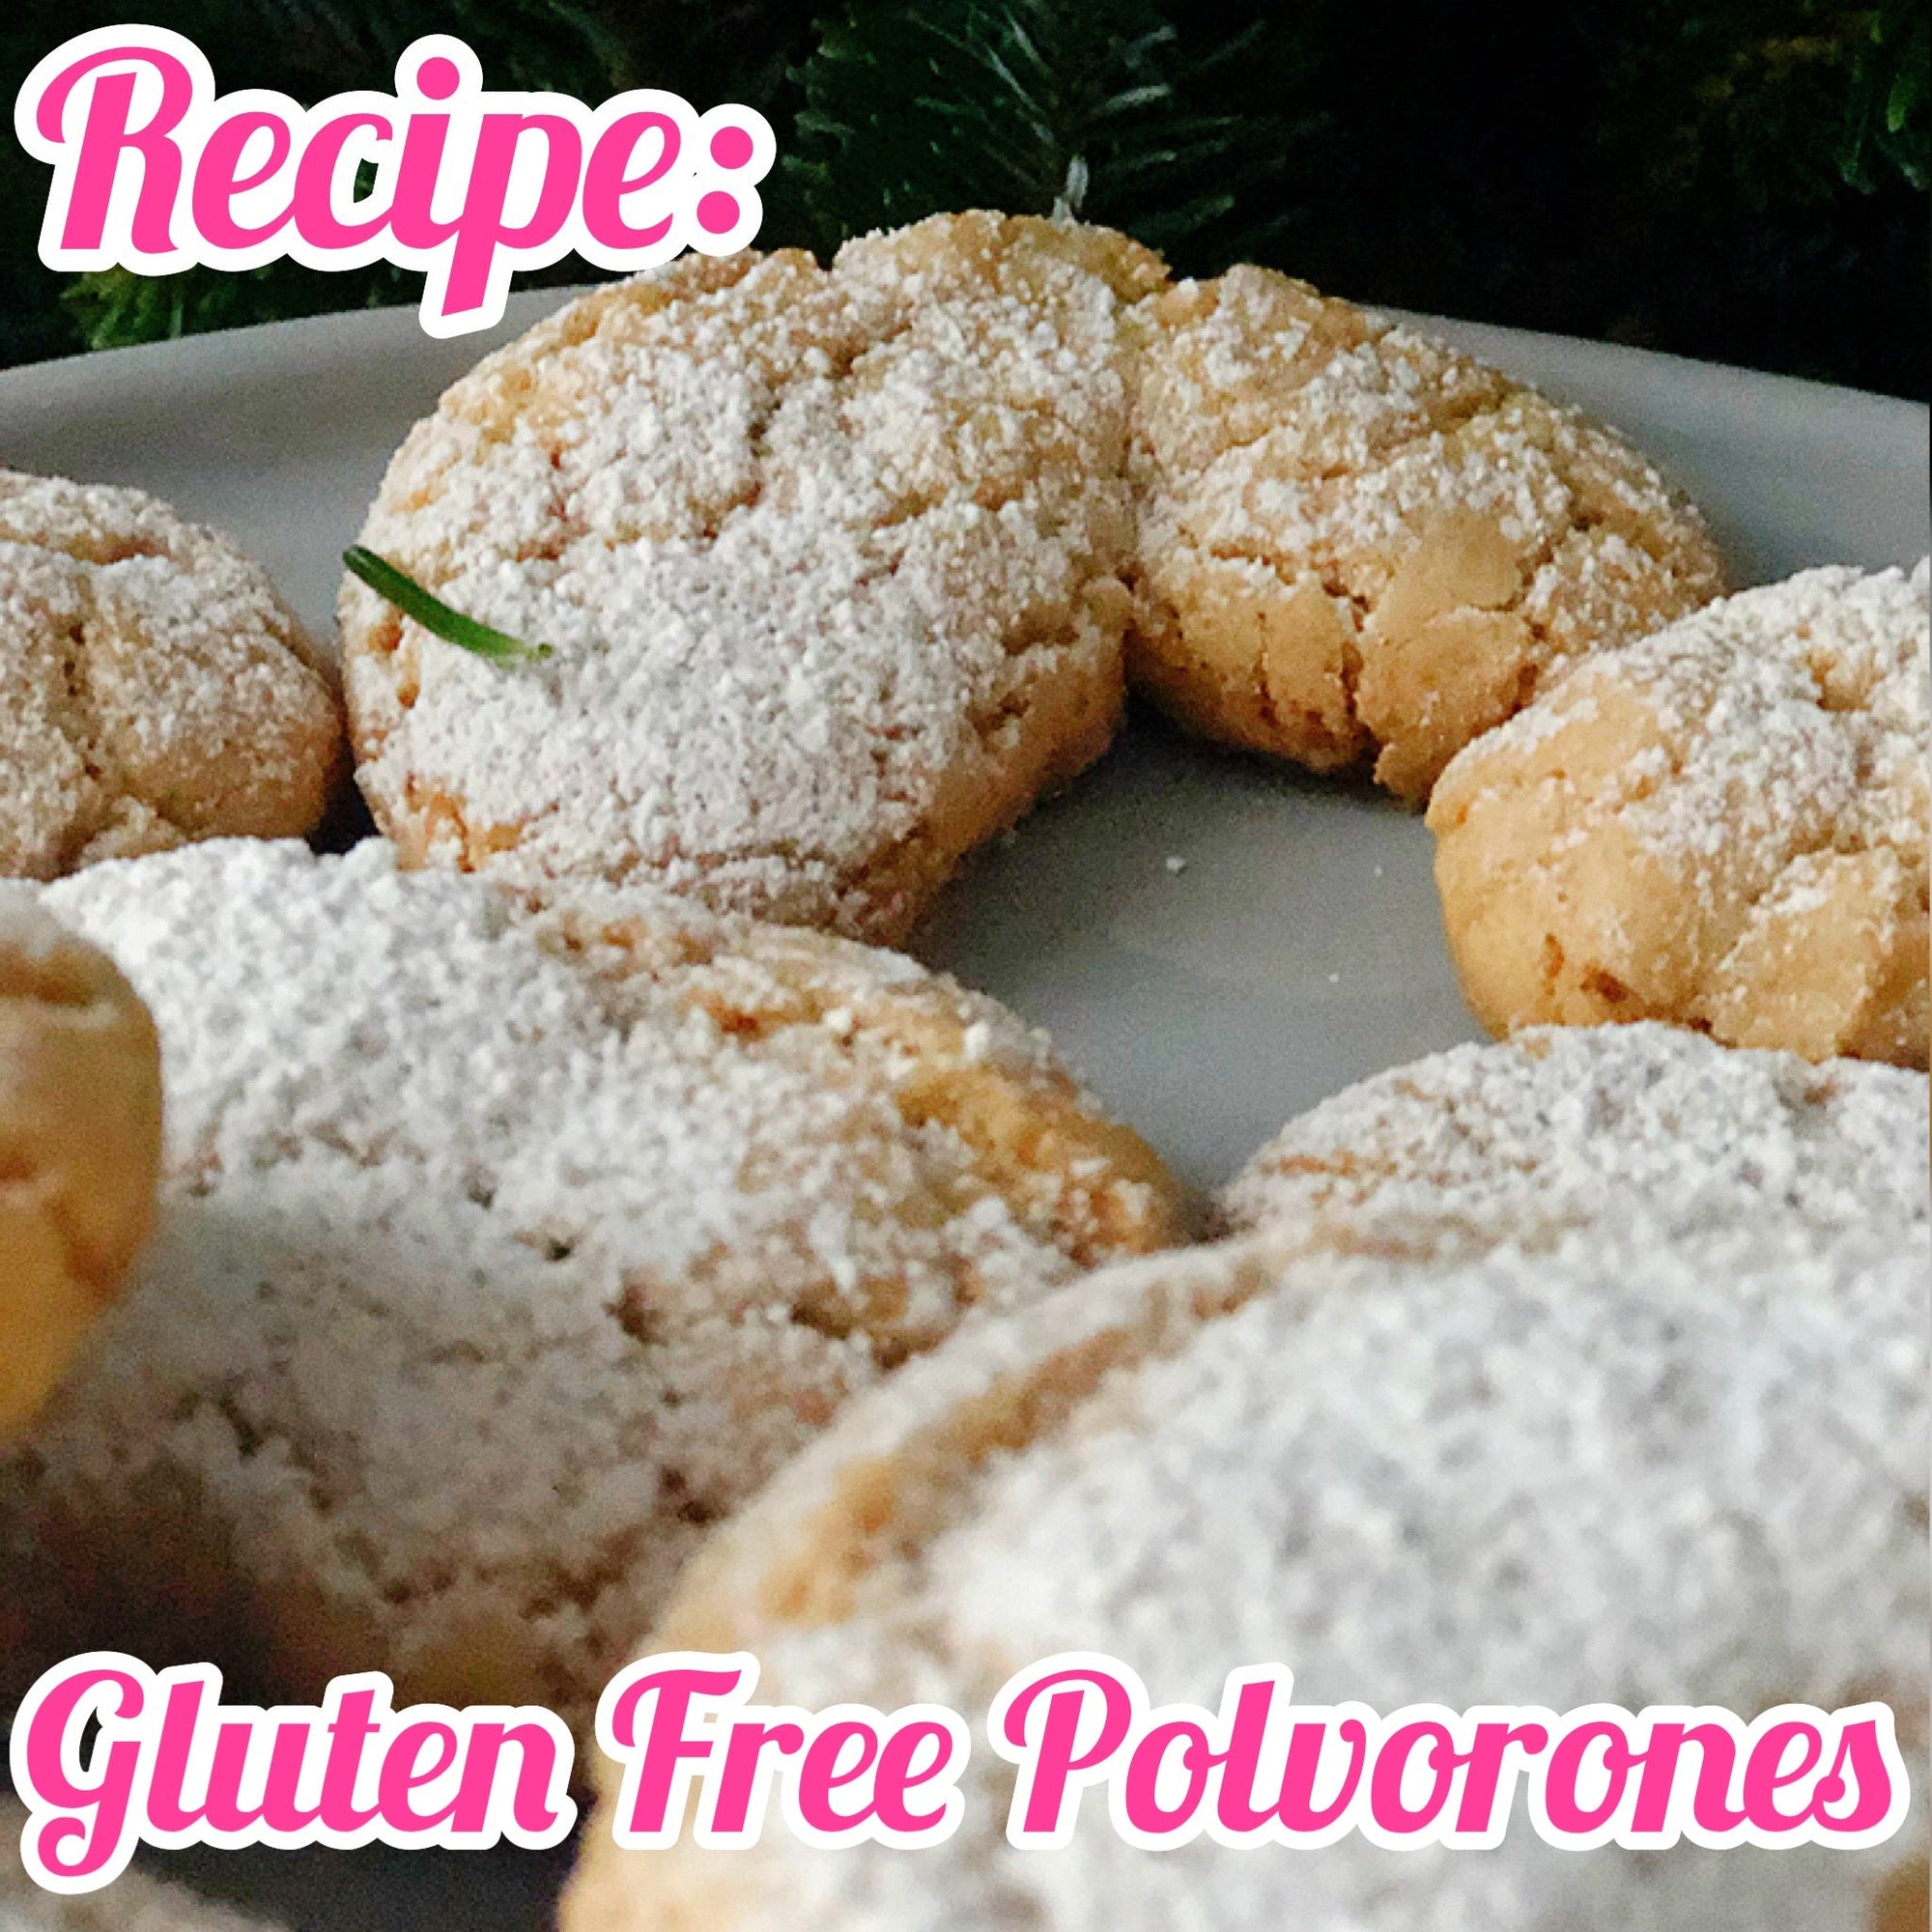 Gluten Free Polvorones by Sara Godbey - Mi LegaSi